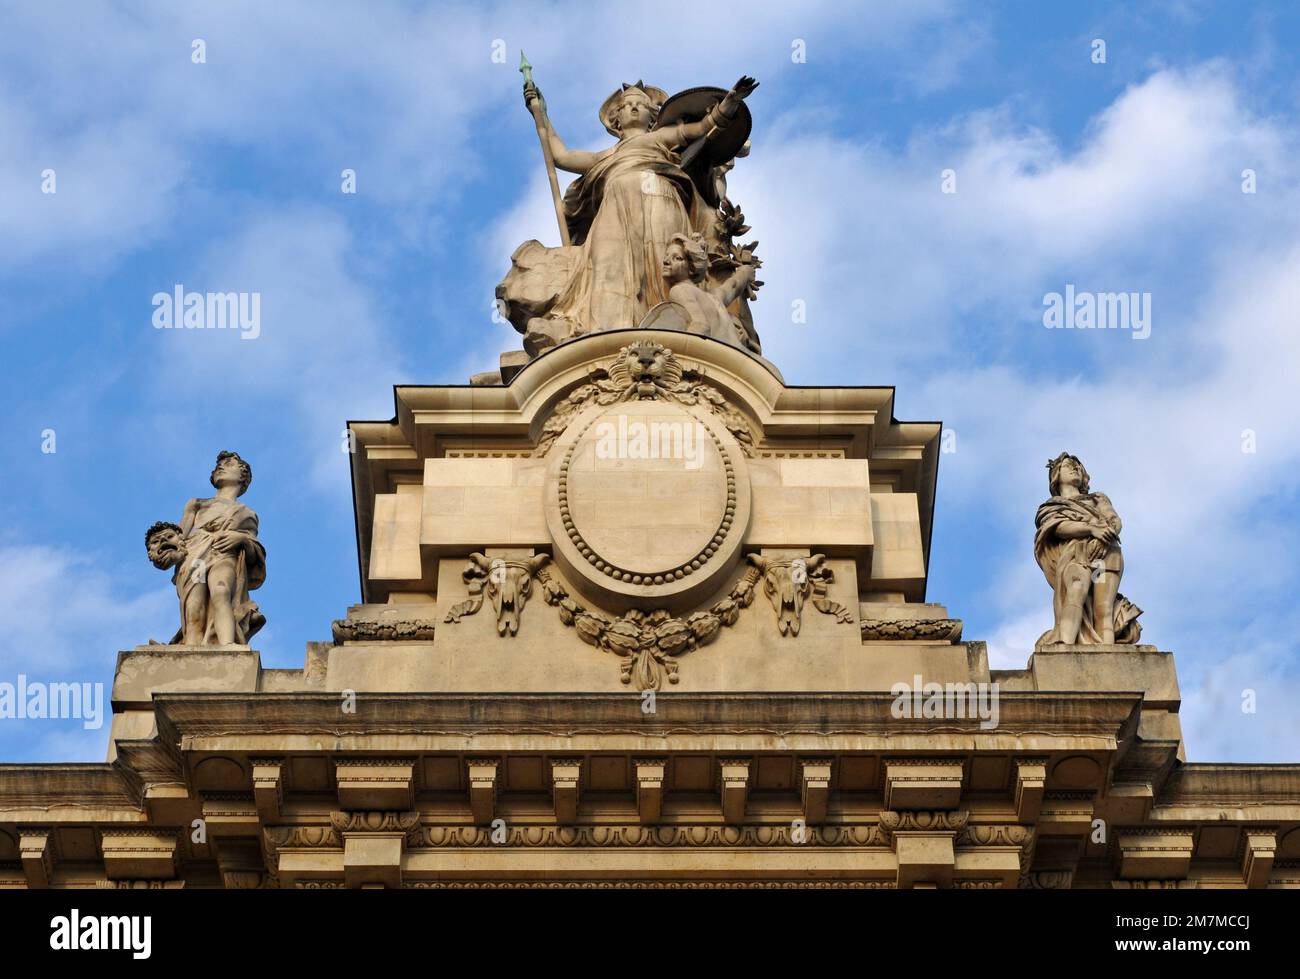 Skulpturen auf dem berühmten Grand Palais in Paris. Erbaut für die 1900 stattfindende Pariser Ausstellung (Weltausstellung), ist sie heute eine Ausstellungshalle und ein Museumskomplex. Stockfoto